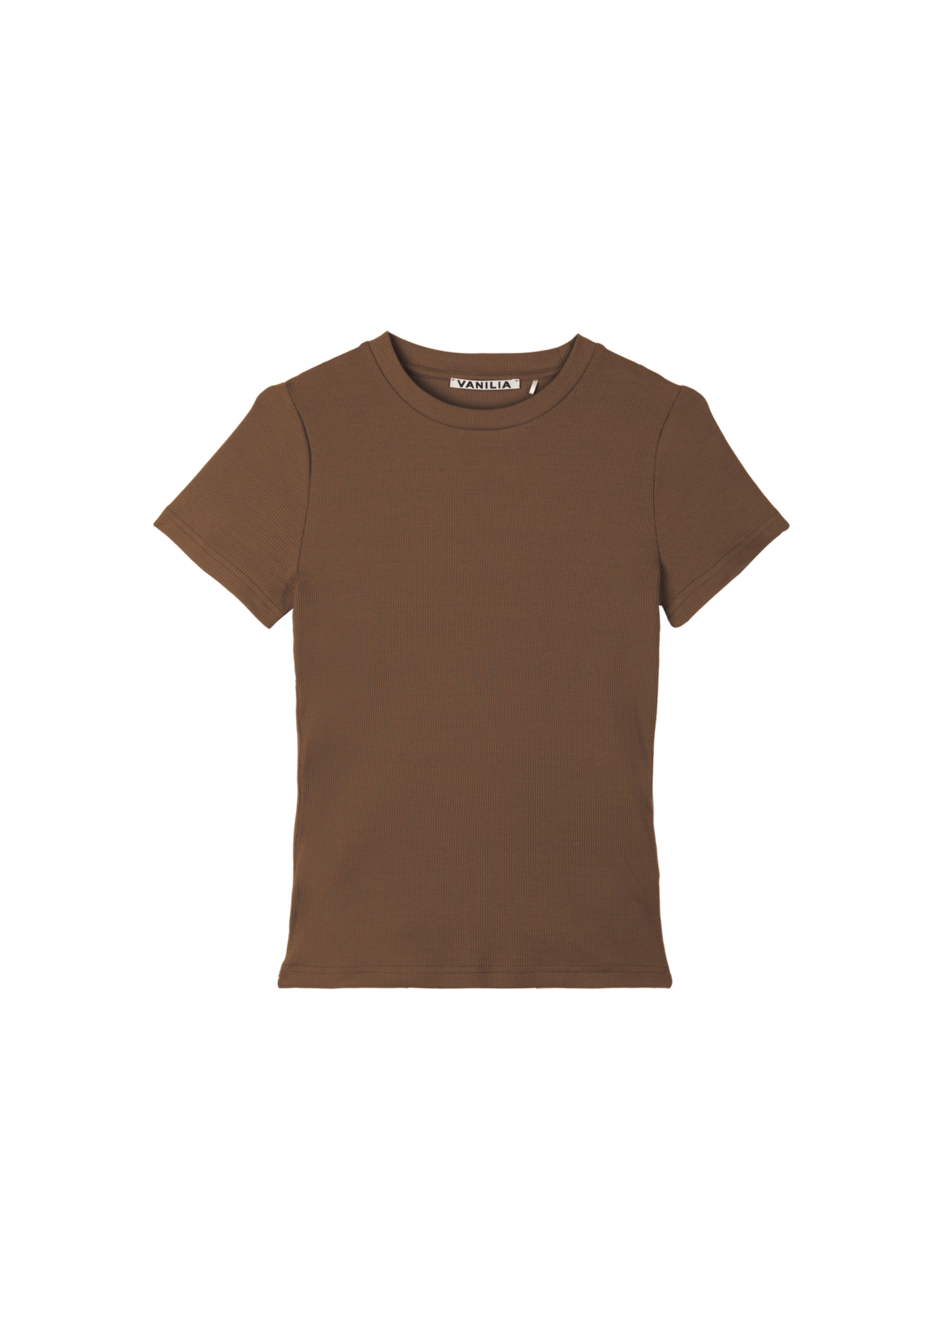 Aanbieding van Basic rib t-shirt voor 59,95€ bij Vanilia